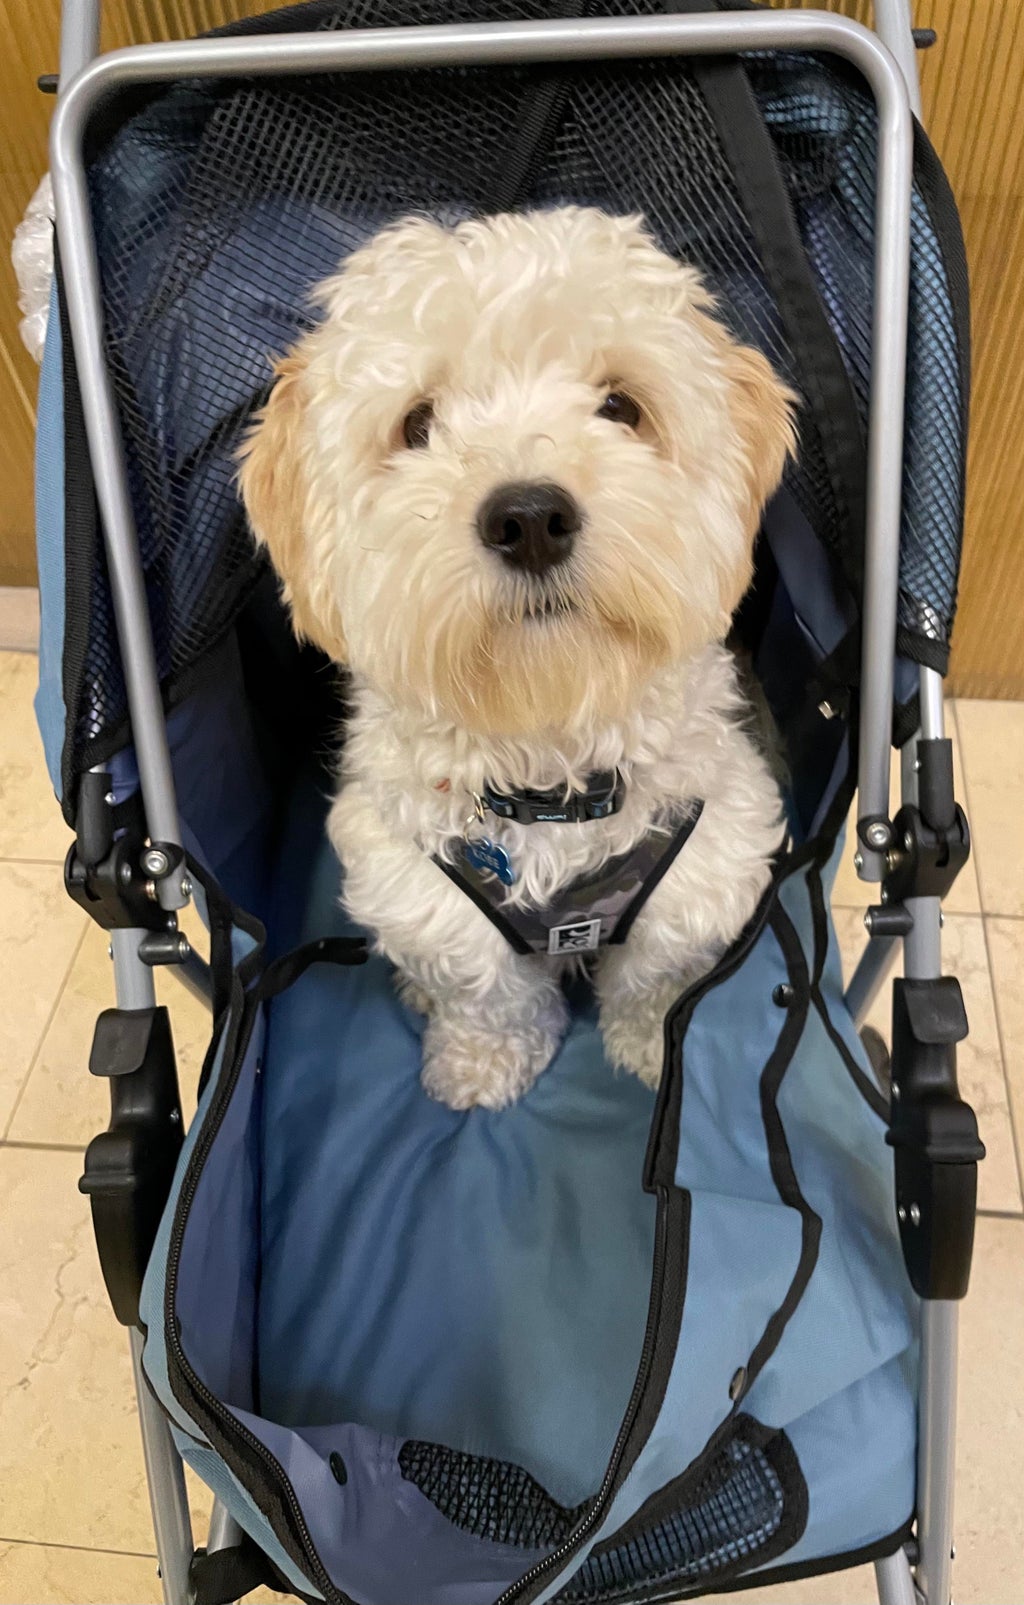 Dog sitting in a stroller